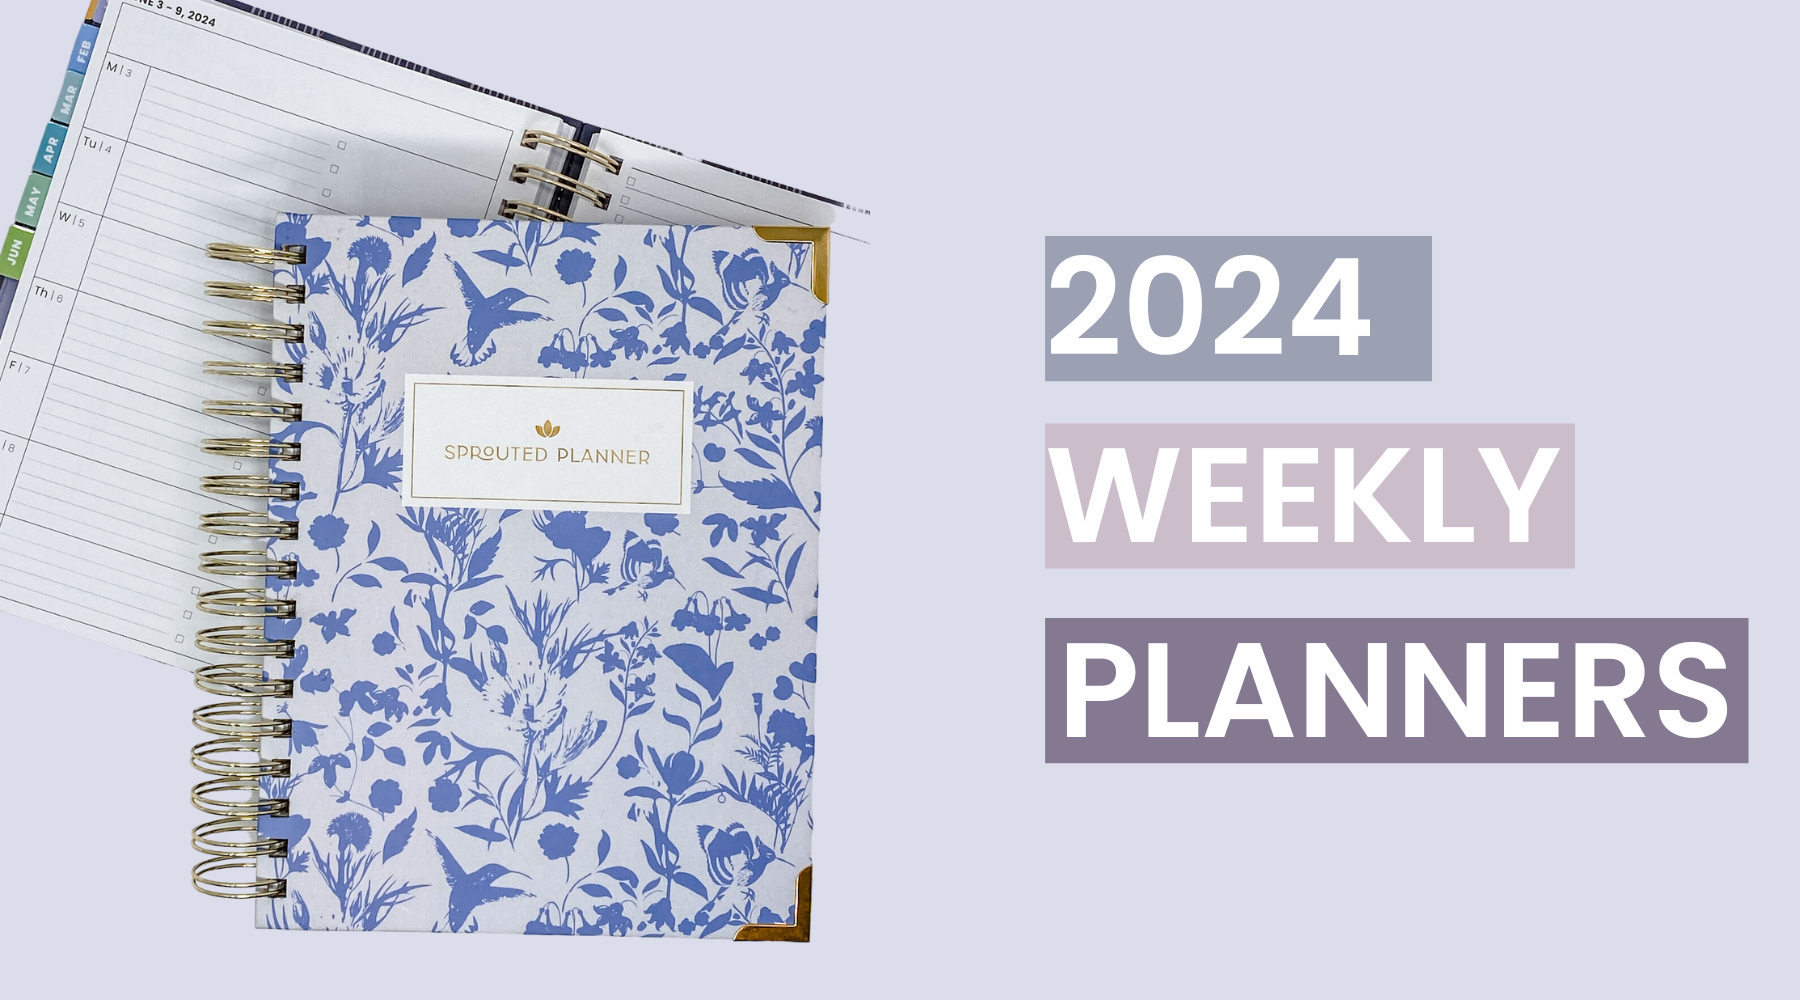 2024 Weekly Planner Rundown